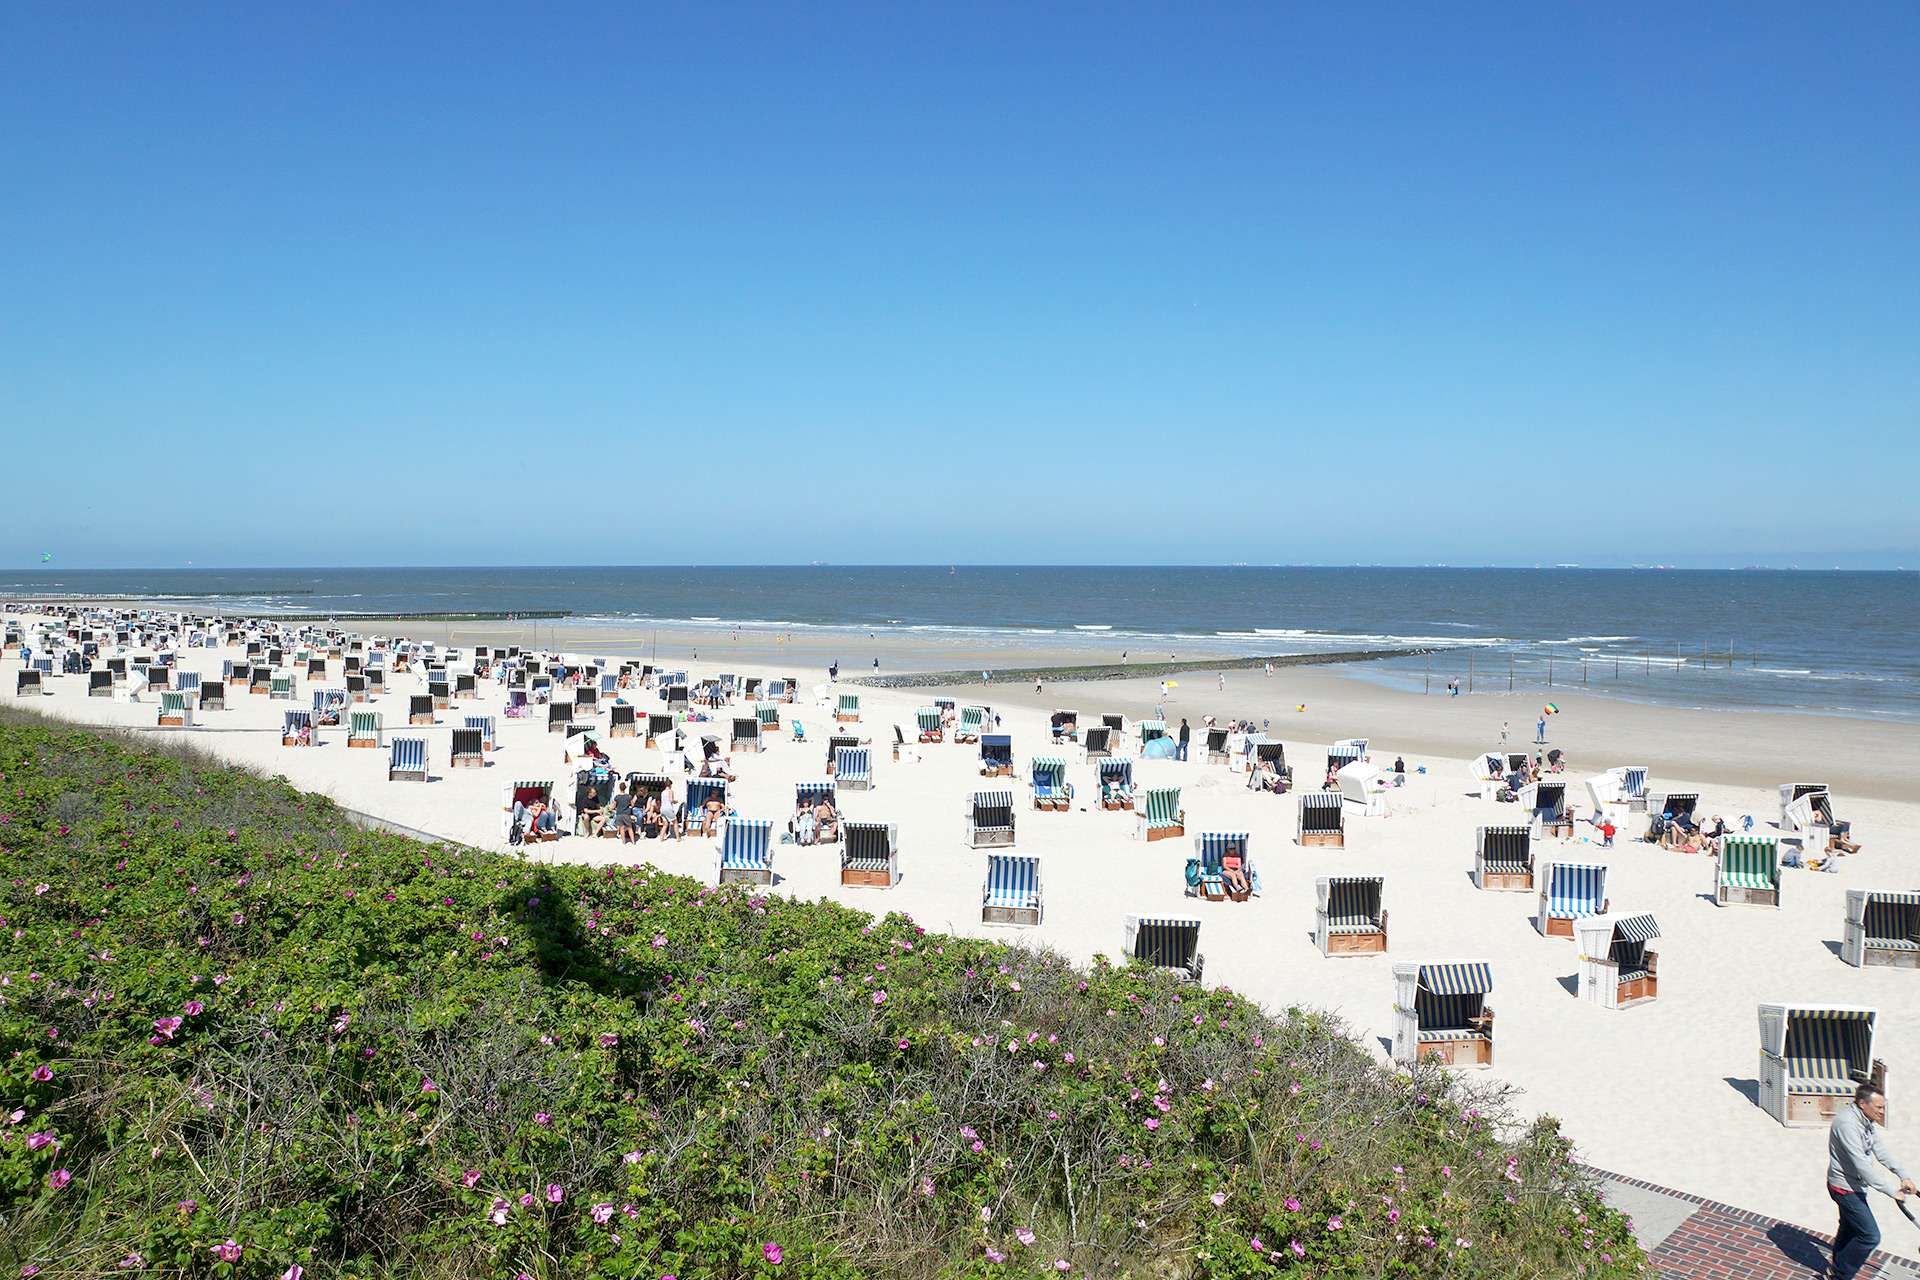 Blick auf den Strand von Wangerooge mit vielen Strandkörben.